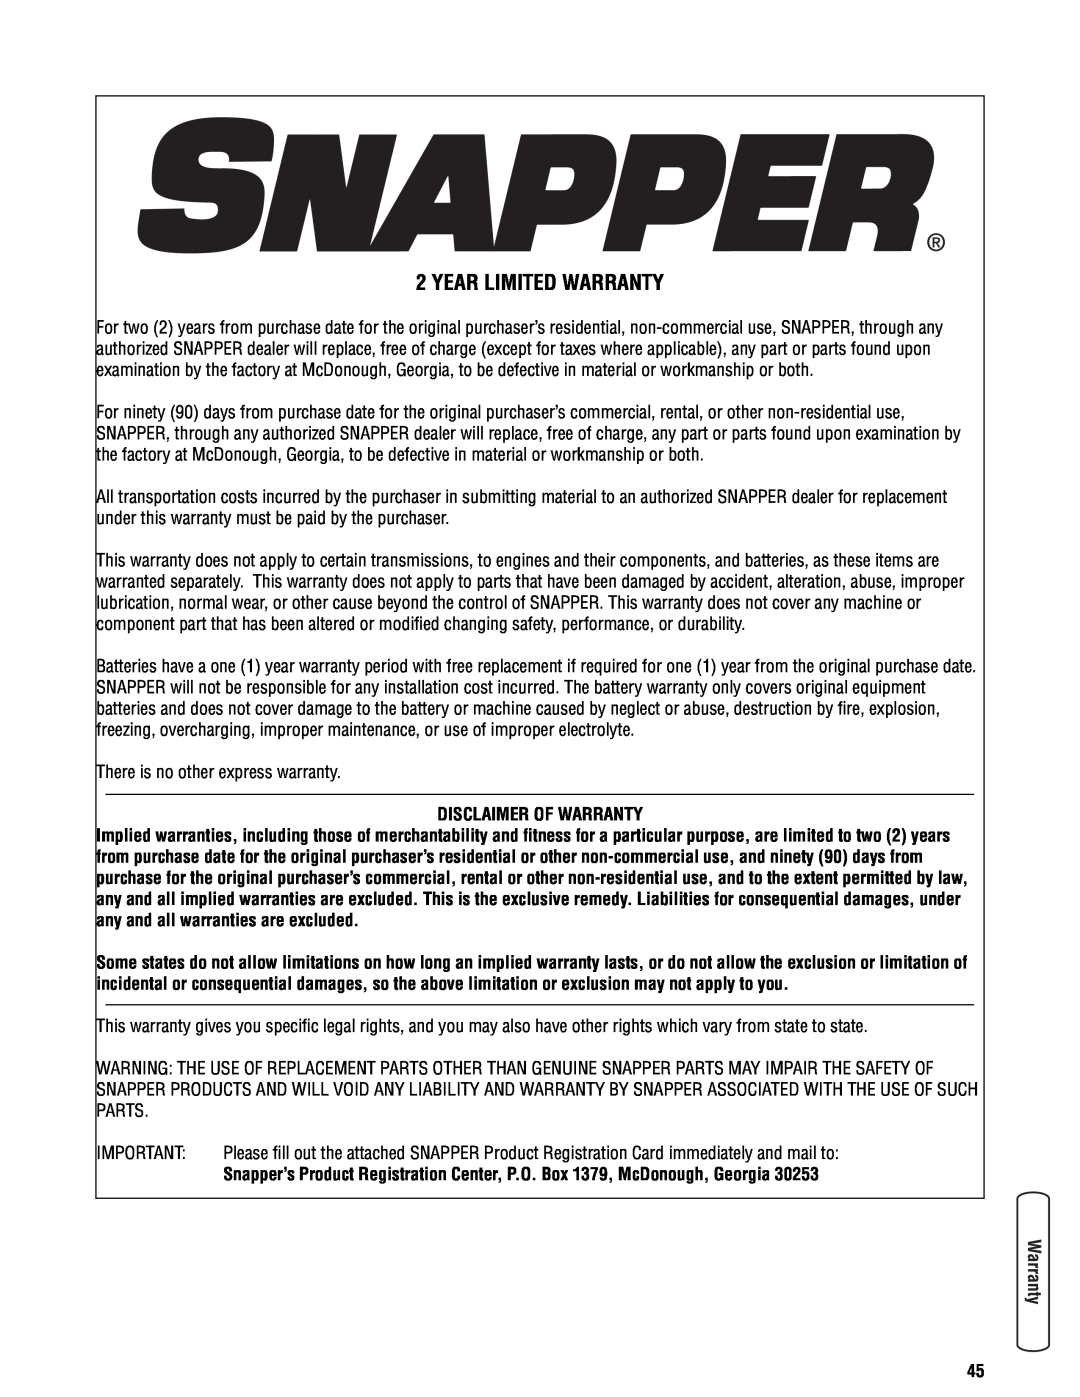 Snapper 355Z manual Year Limited Warranty, Disclaimer Of Warranty 